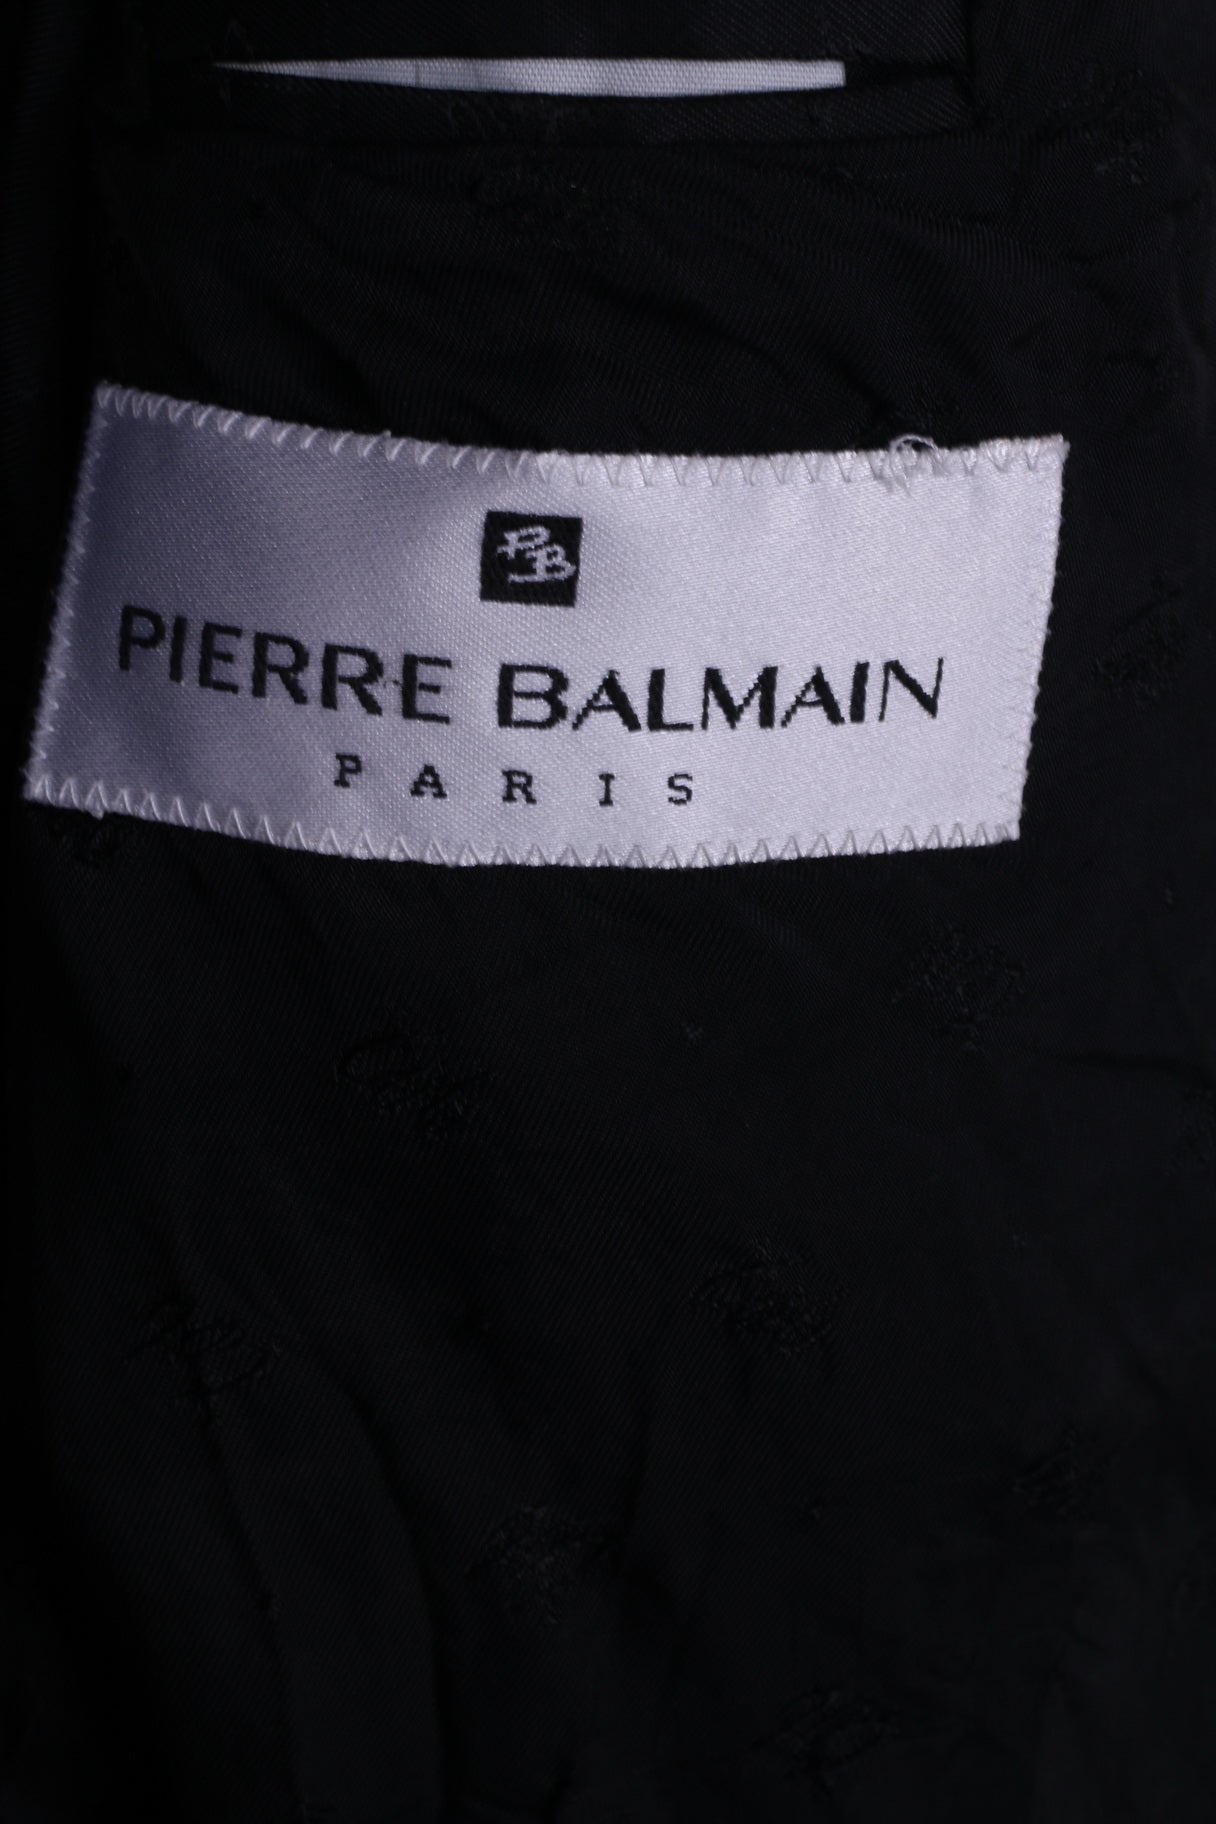 Pierre Balmain Hommes S Blazer Noir Boutons Détaillés Veste Simple Boutonnage 